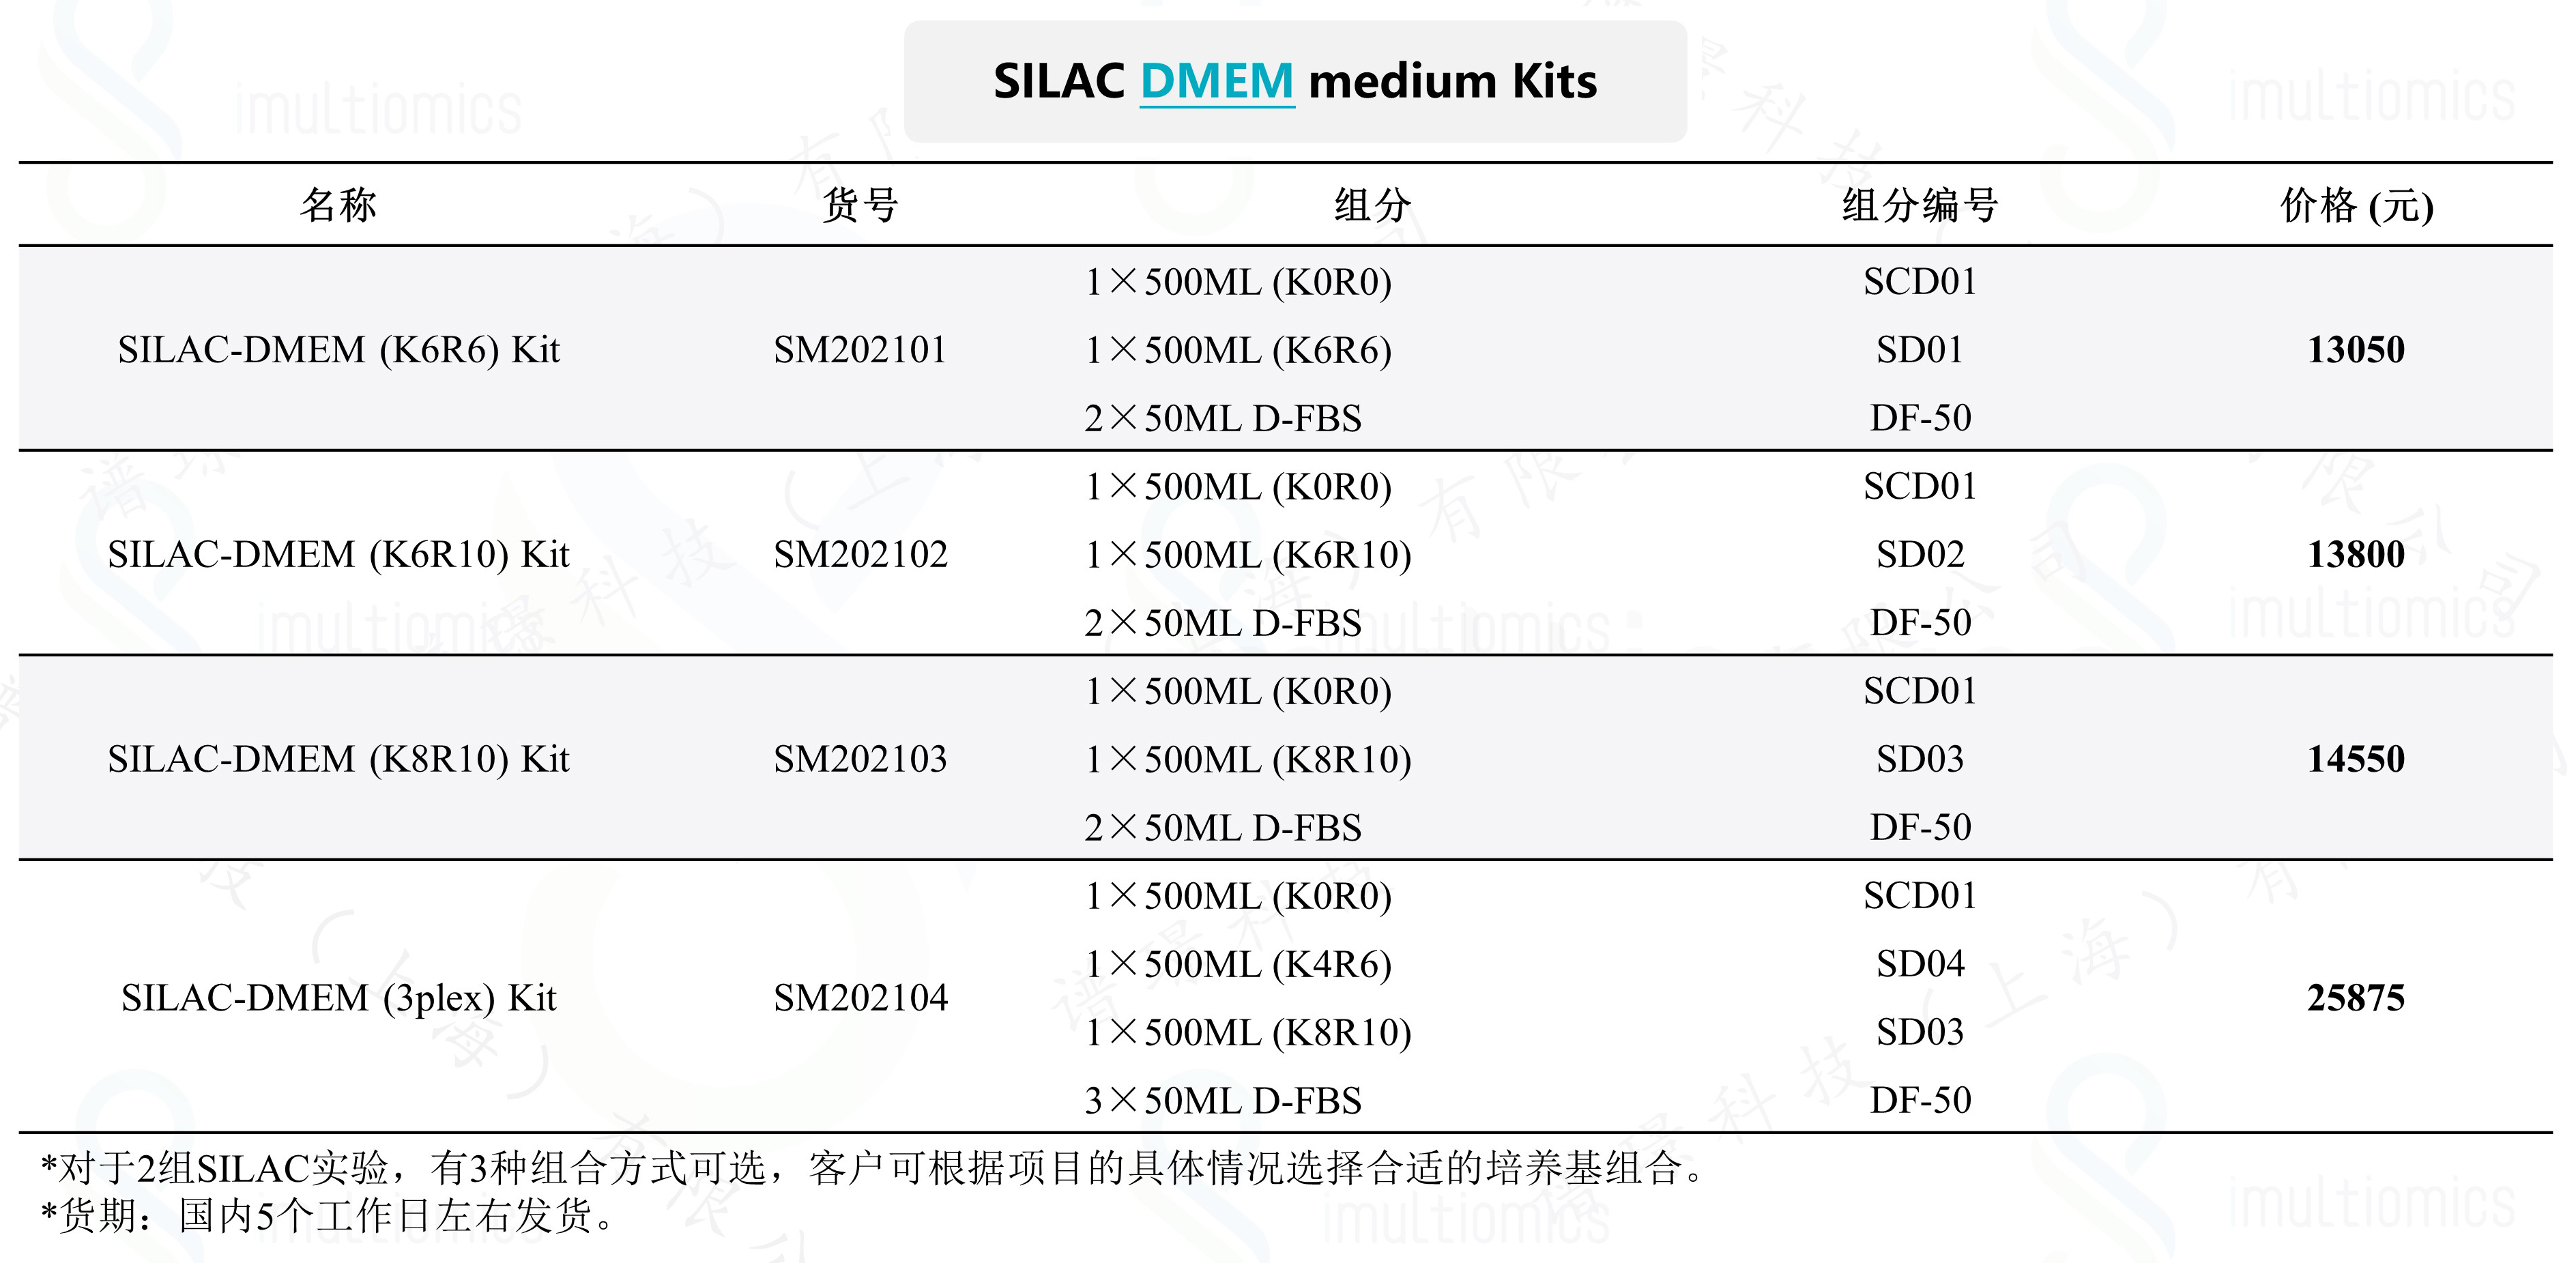 SILAC-DMEM kits